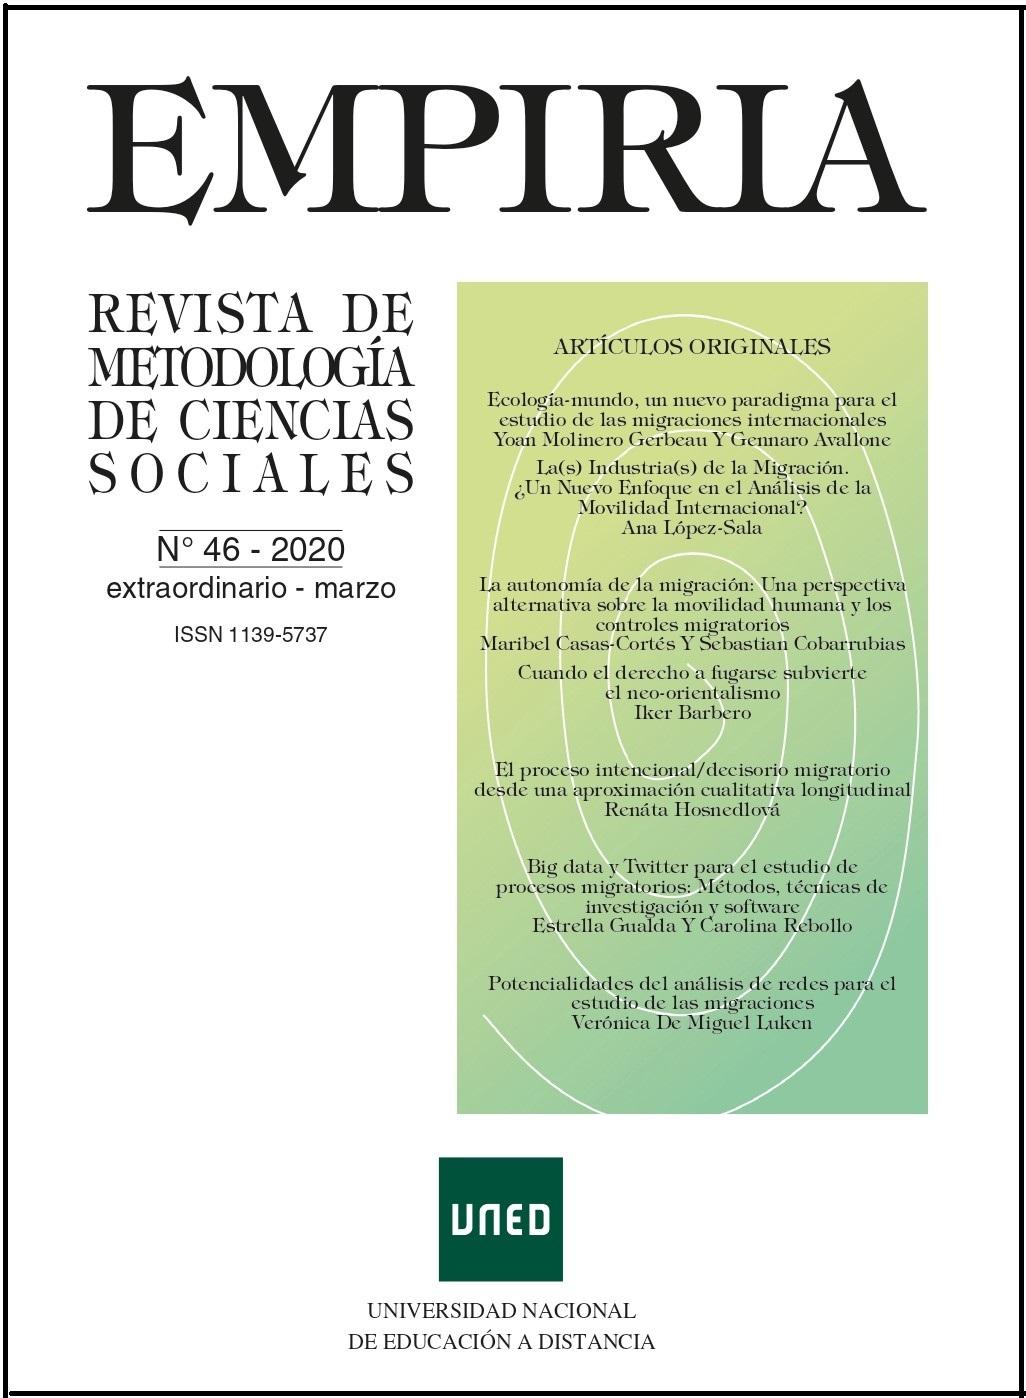 Empiria. Revista de Metodología de las Ciencias Sociales